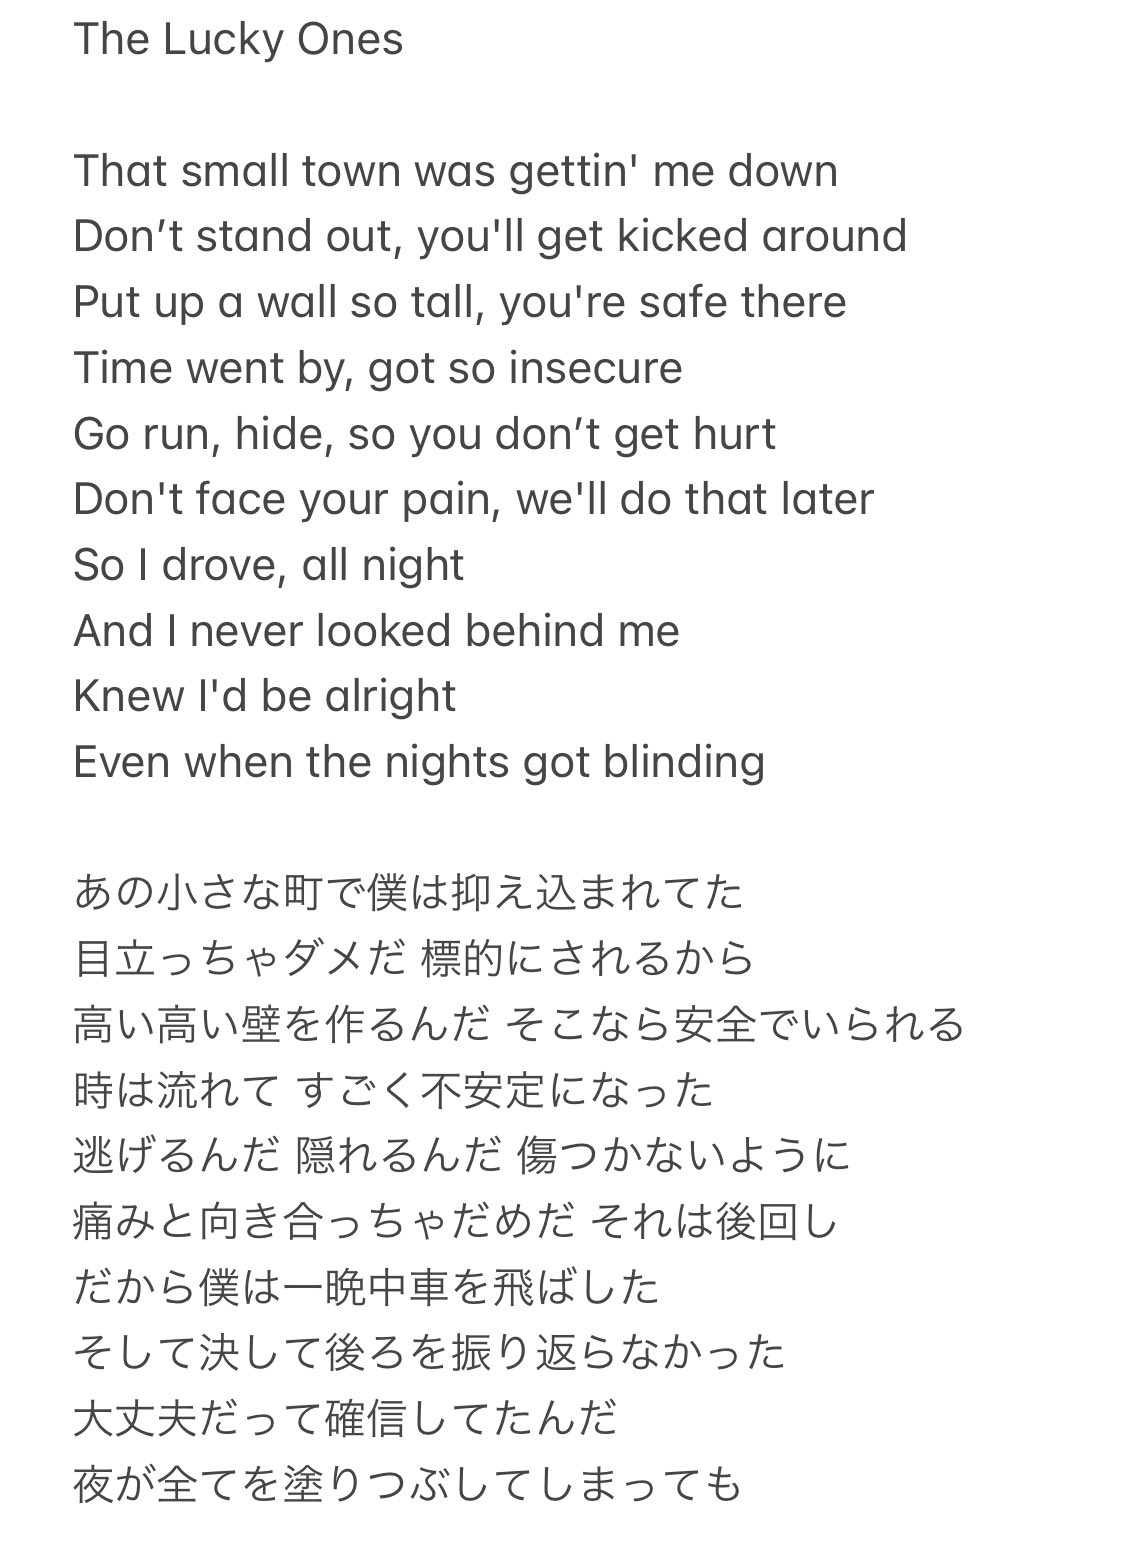 Sayaka The Lucky Ones も勢いで和訳してみました 一部歌詞が違うところがあると思うんですが 正しい歌詞が聞き取れません Translated The Lyrics Into Japanese Ptx和訳 Ptxtheluckyones T Co Fjjmod3ptg Twitter